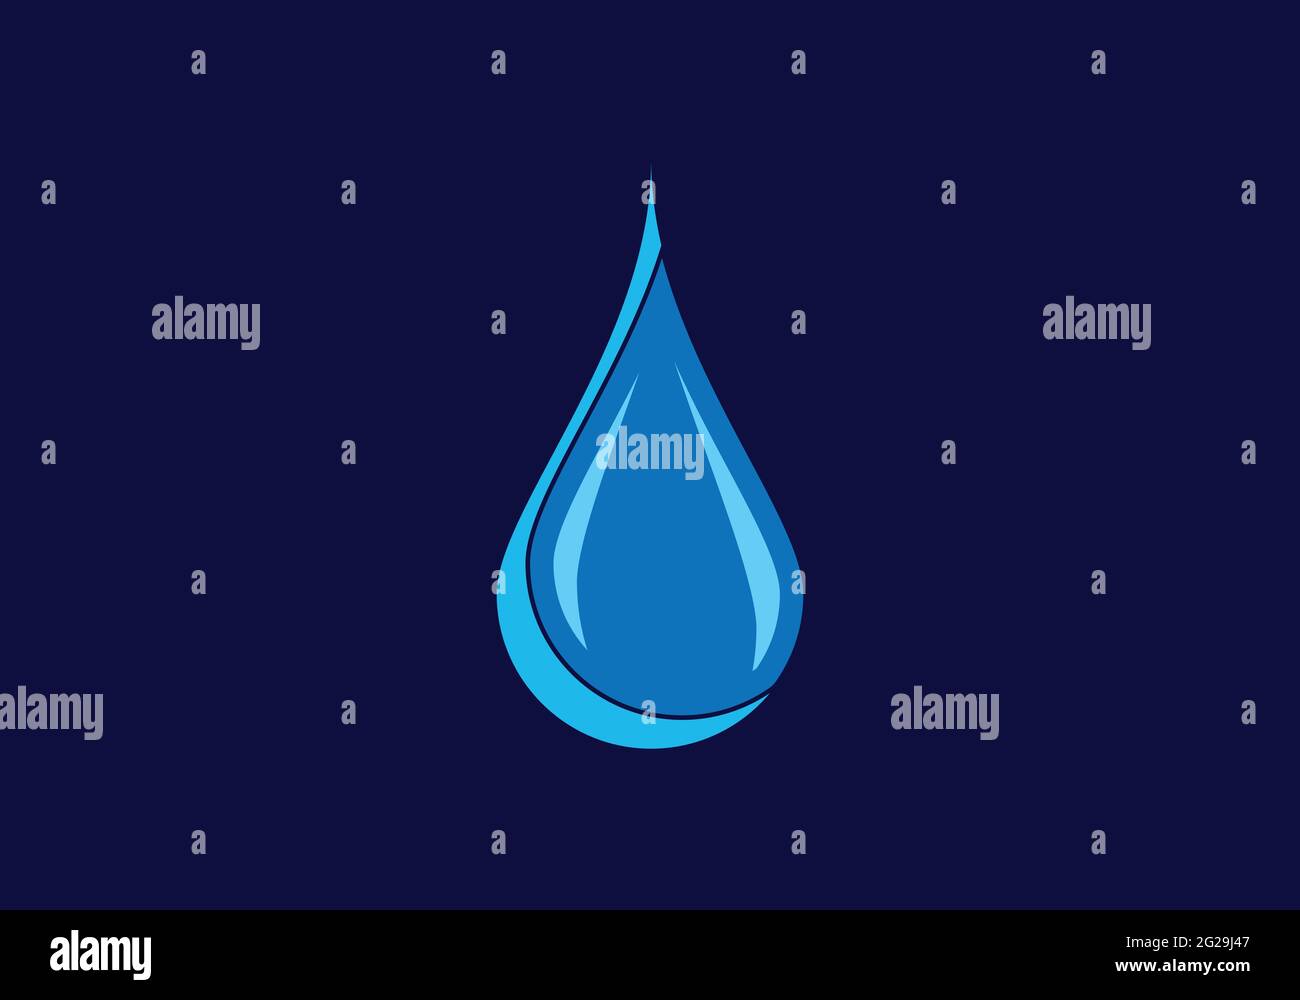 Creative Water drop Logo design vector template. Stock Vector